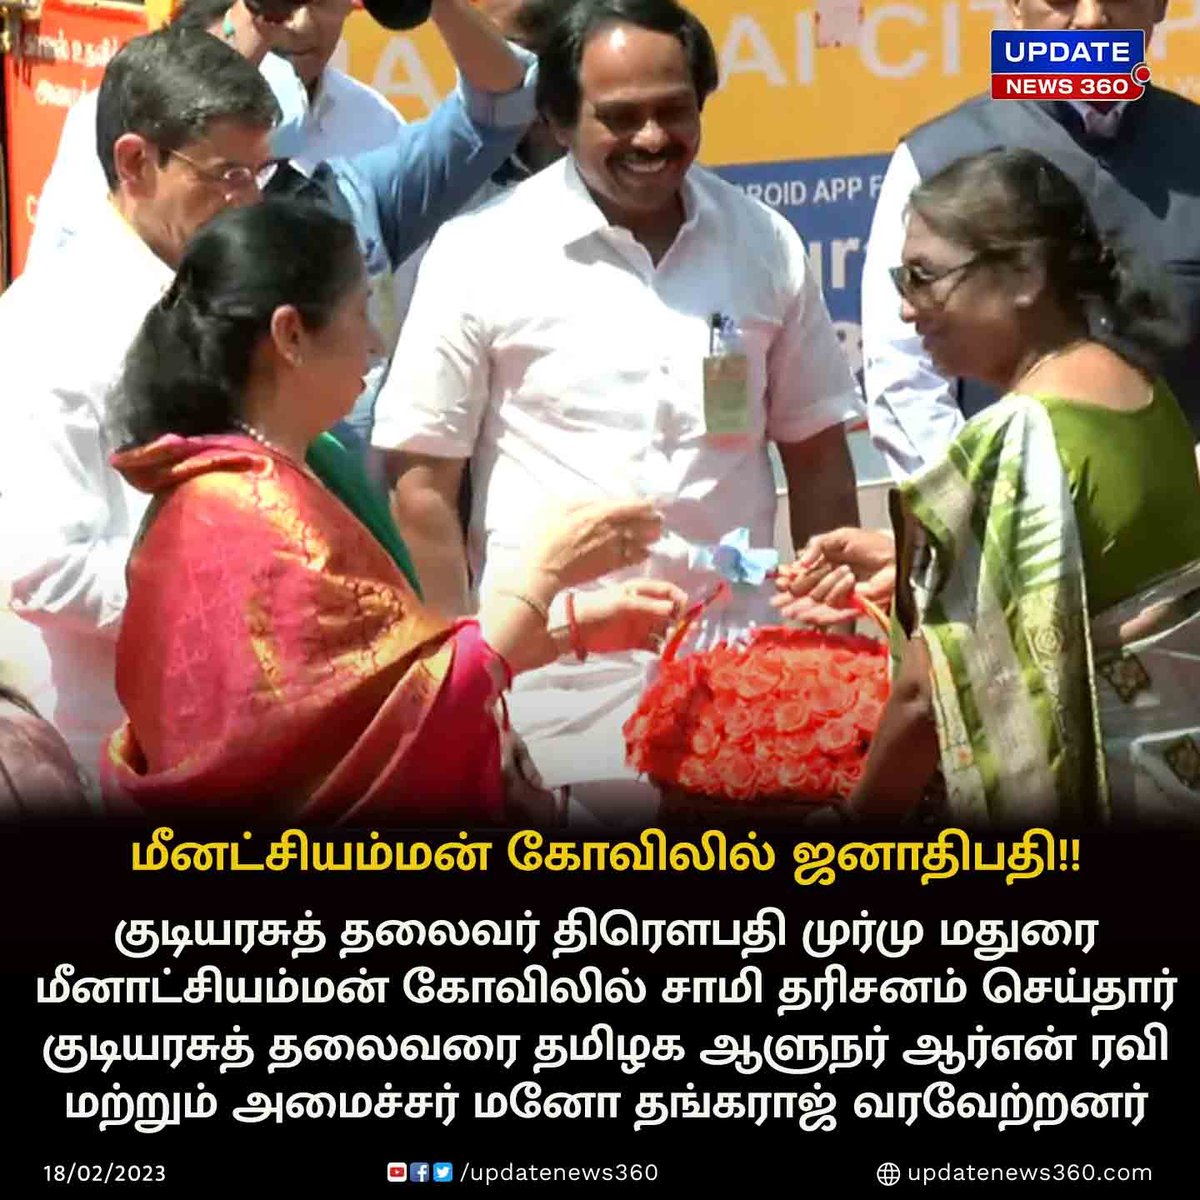 மதுரை மீனாட்சியம்மன் கோவிலில் குடியரசுத் தலைவர் திரௌபதி முர்மு சாமி தரிசனம்!!

#UpdateNews | #President | #DroupadiMurmu | #Madurai | #MeenatchiAmmanTemple |  #TamilNews | #UpdateNews360